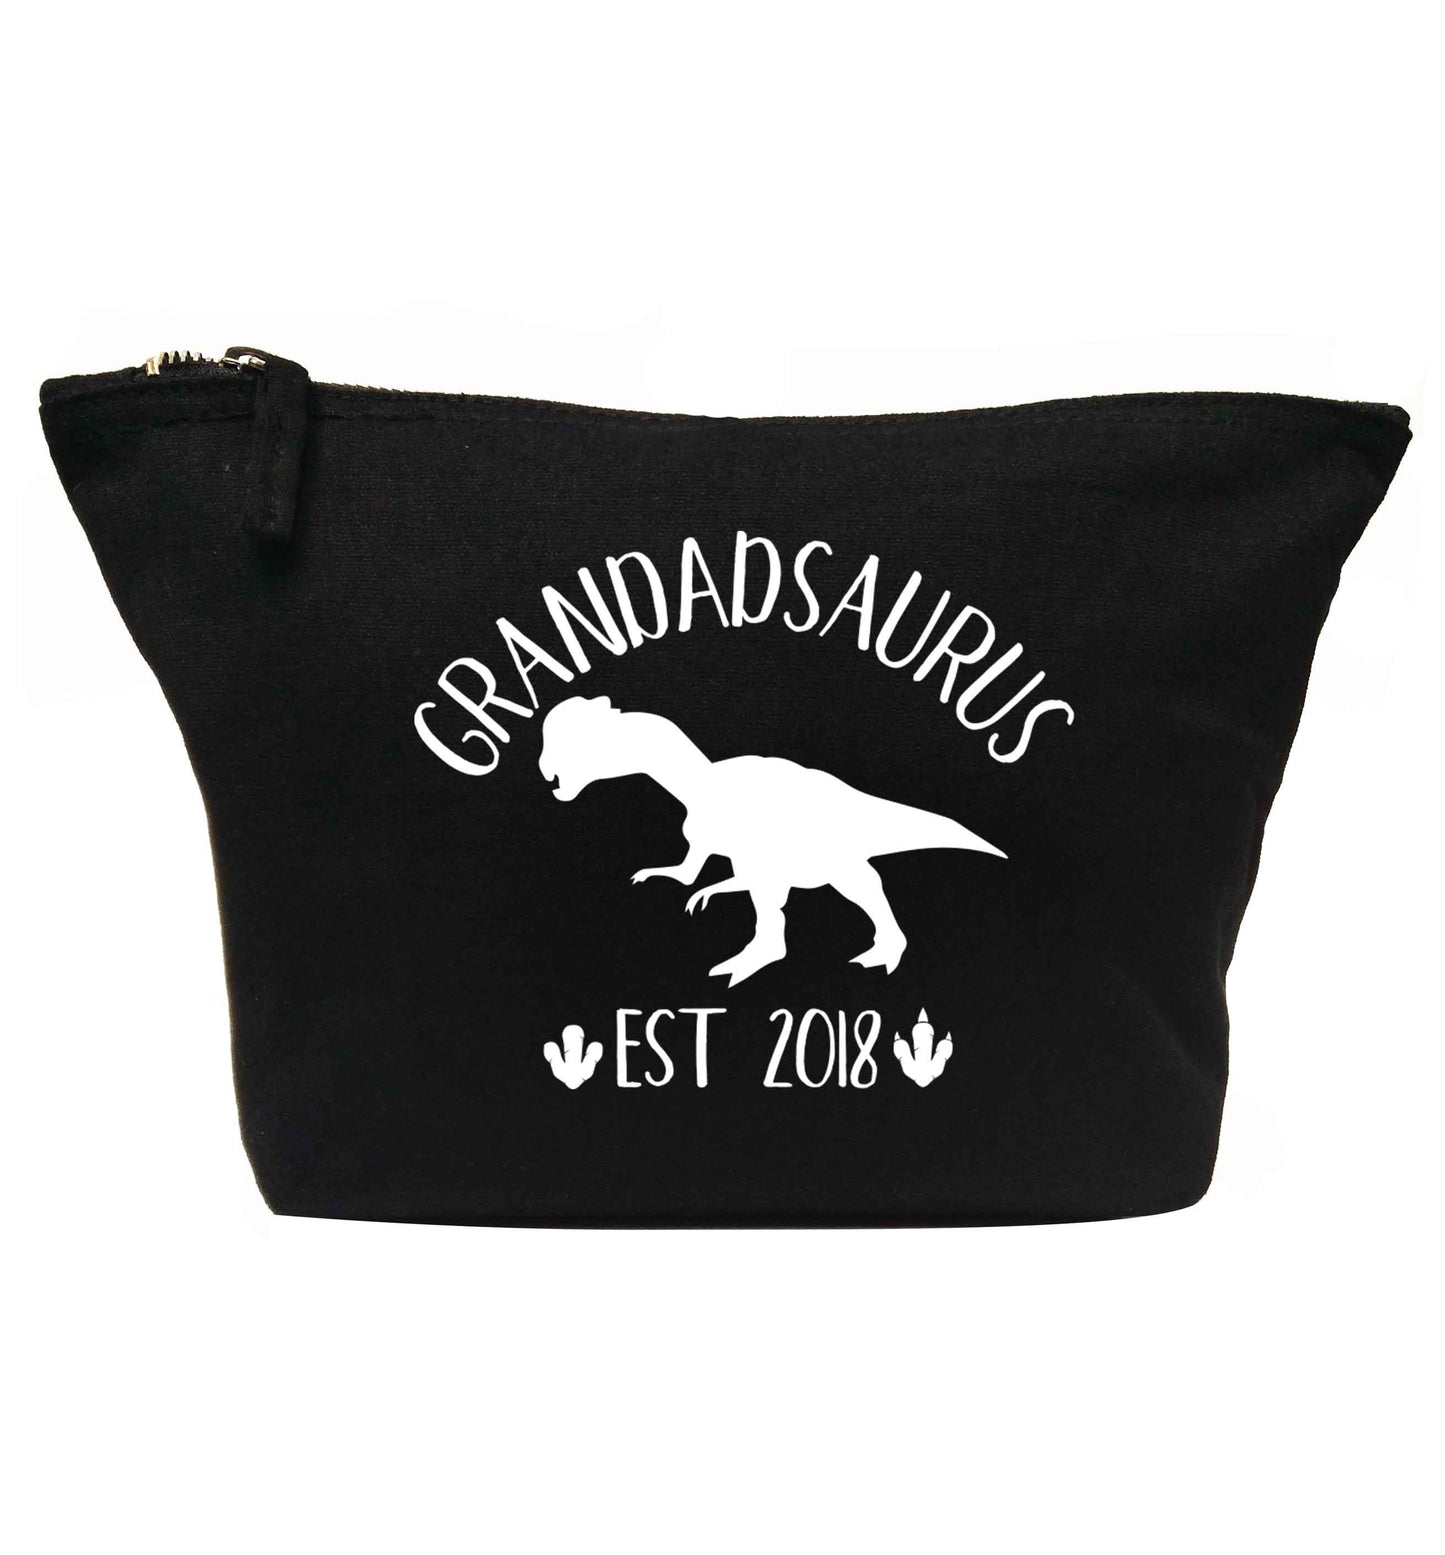 Personalised grandadsaurus since (custom date) | makeup / wash bag